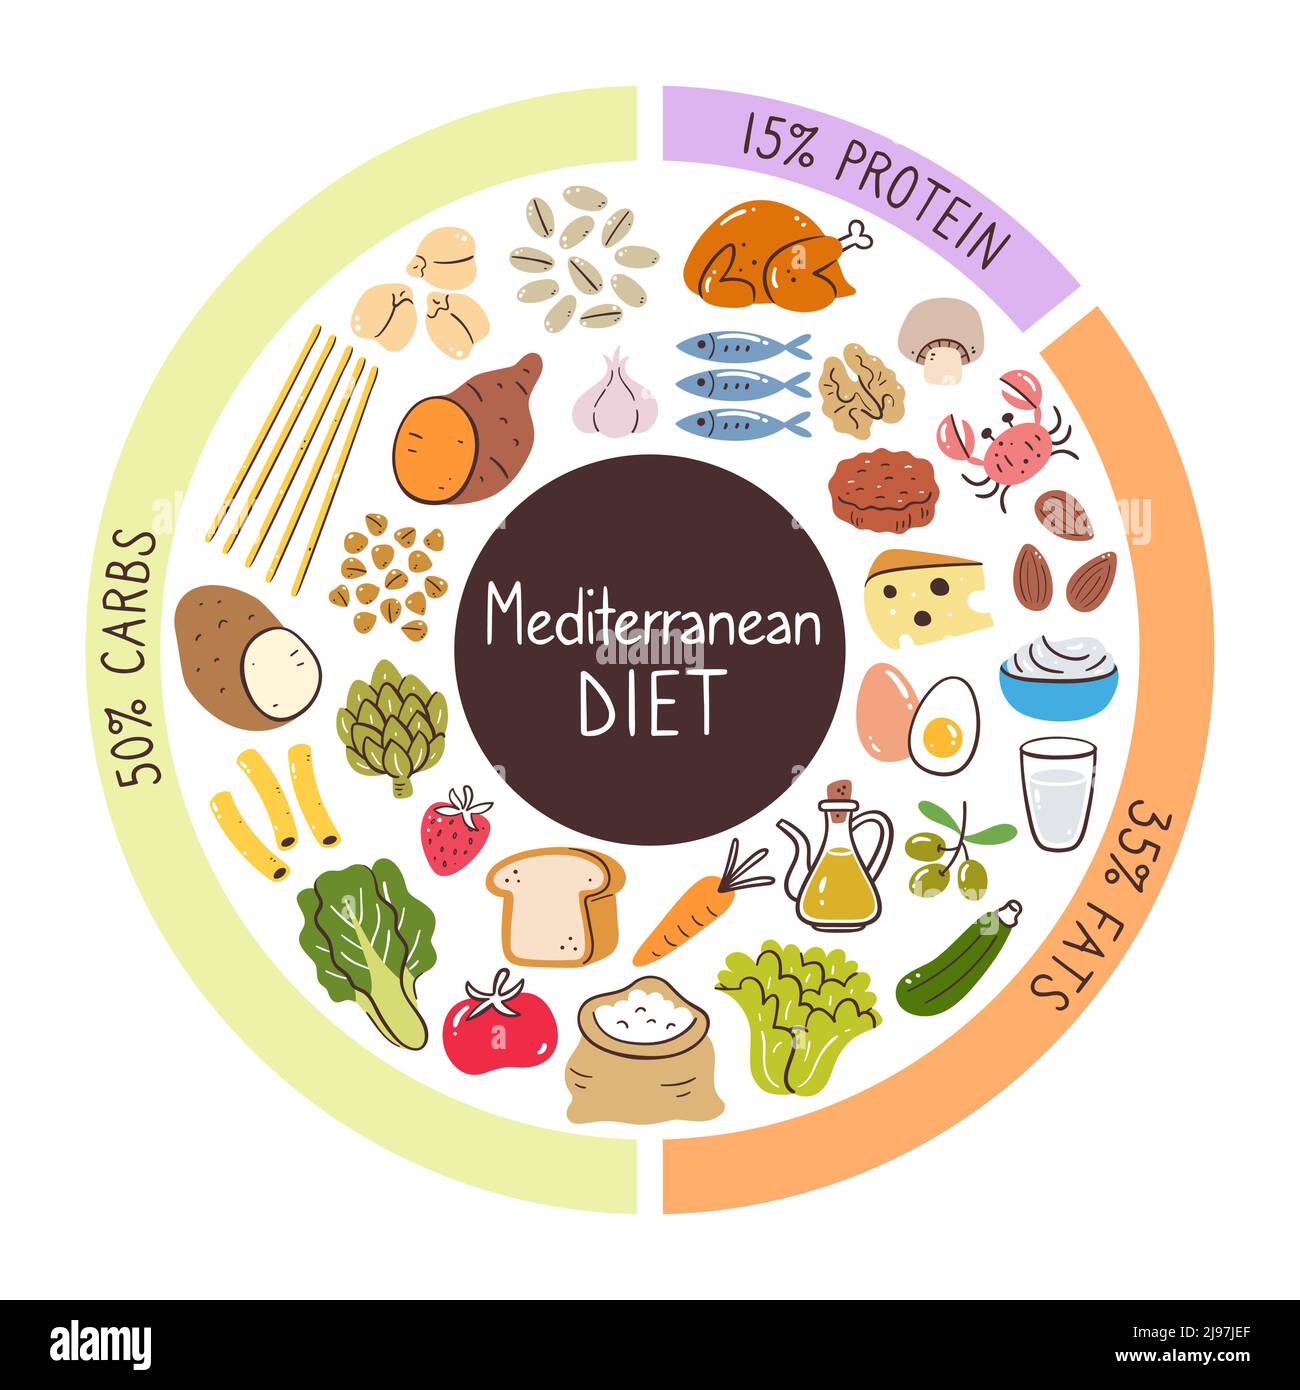 Mediterrane Ernährung Lebensmittel Zutaten. Prozentsätze von Kohlenhydraten, Eiweiß und Fett am meisten in dieser Diät verwendet. Food Icon Kollektion. Stock Vektor